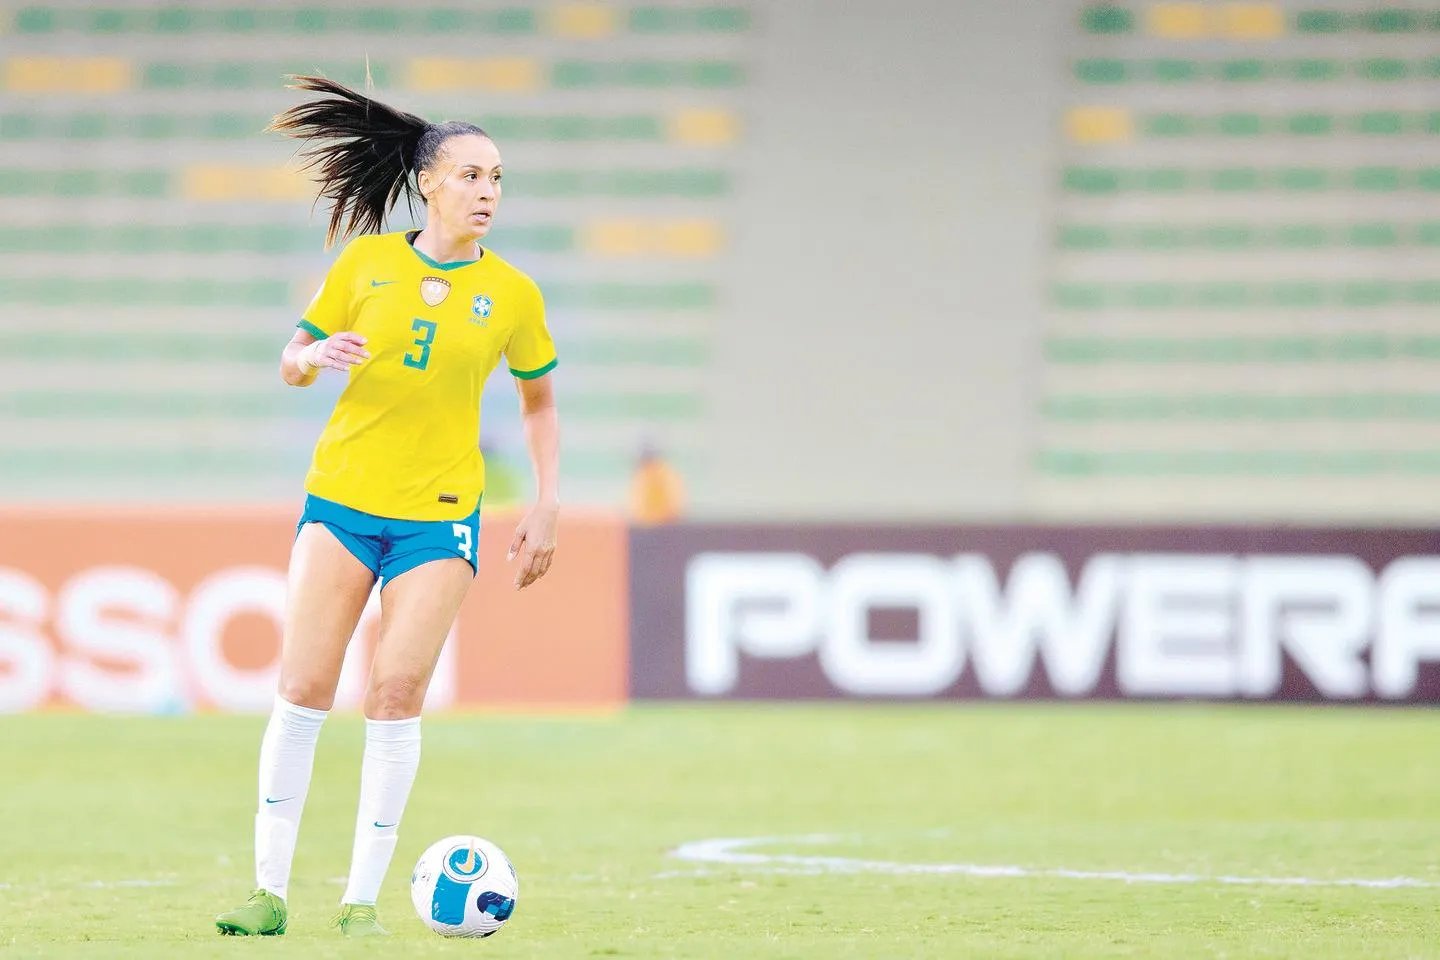 Seleção feminina de futebol é convocada para a Copa do Mundo